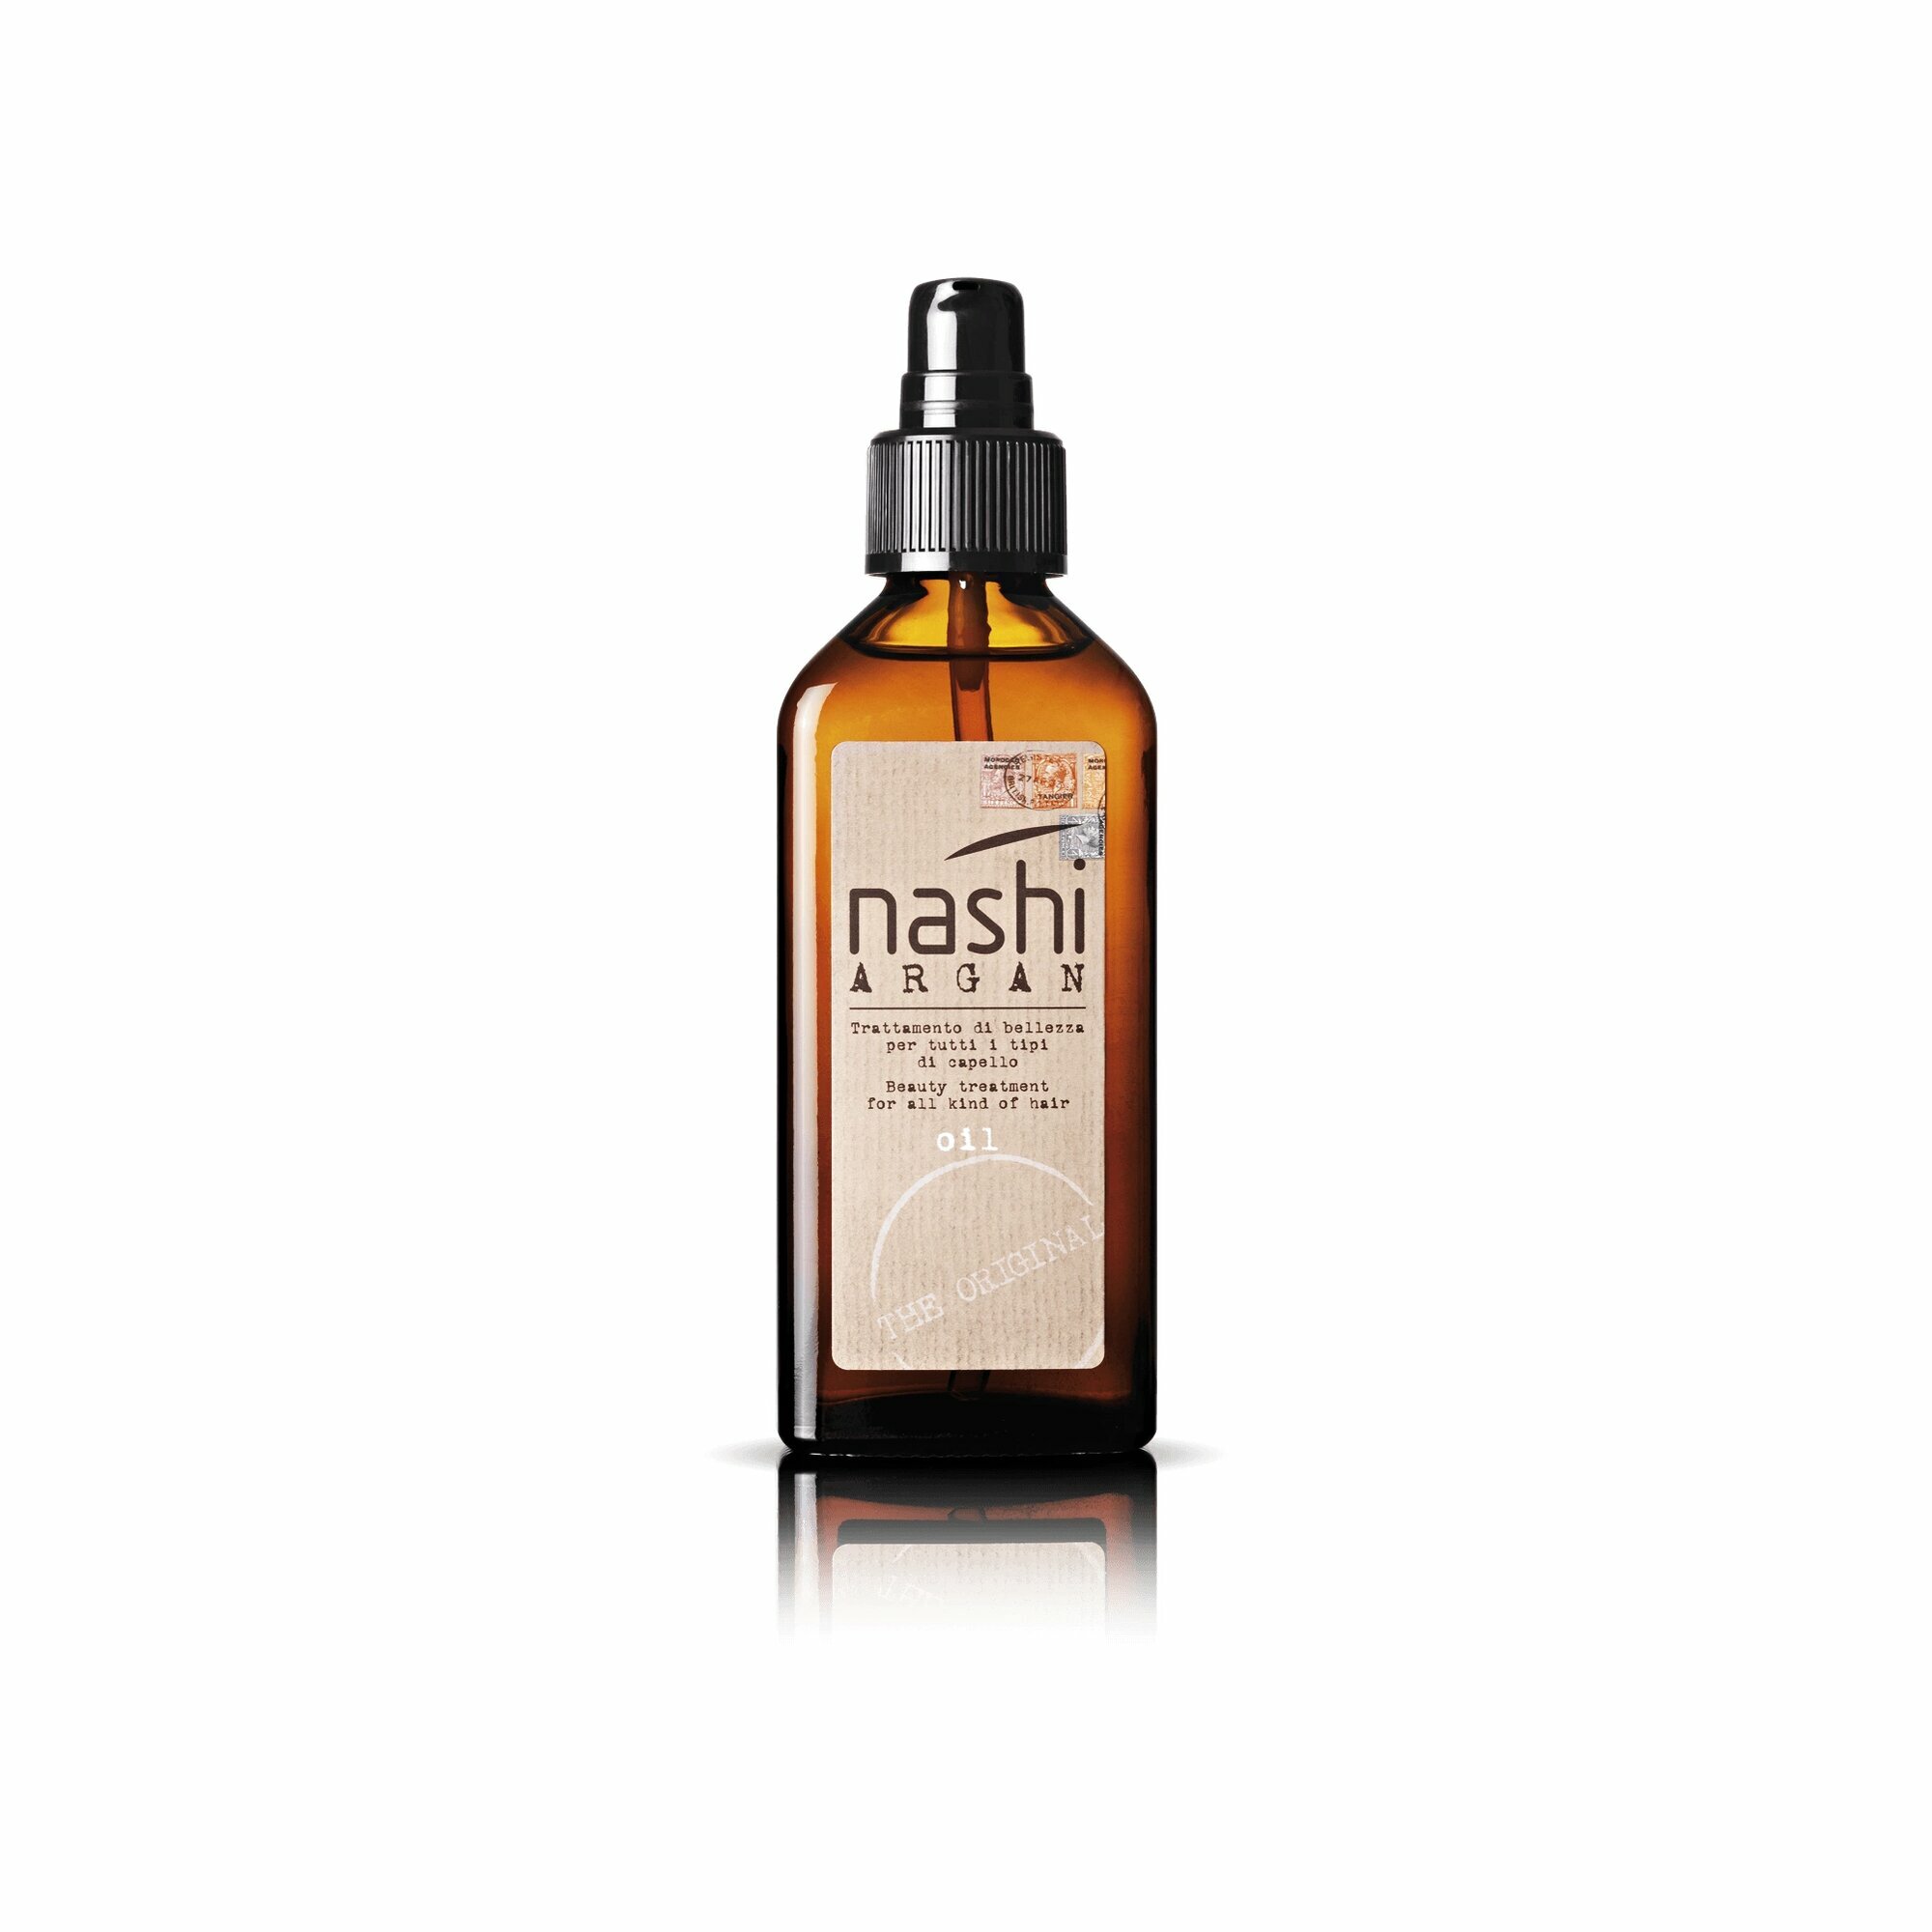 Nashi Argan Oil Масло косметическое для всех типов волос, 100мл